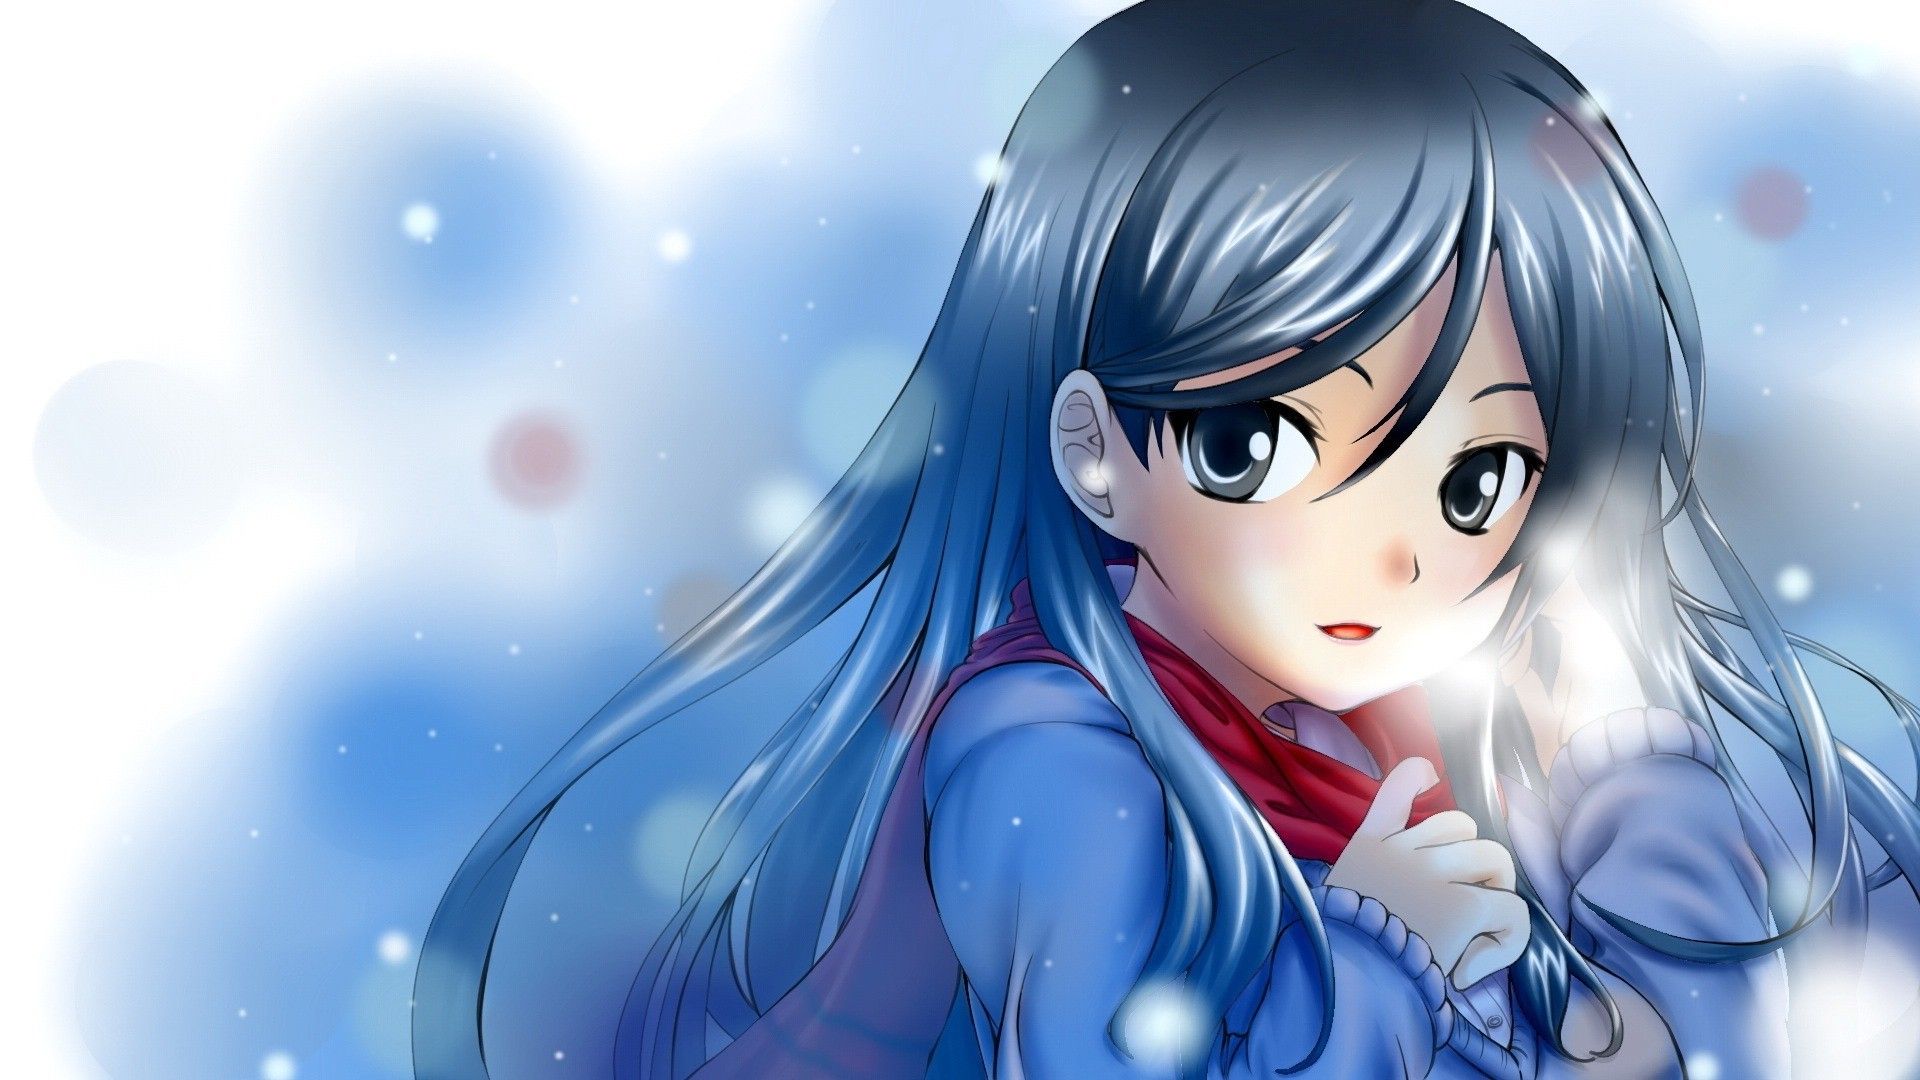 Beautiful Anime Wallpaper Image Beautiful Anime Girl